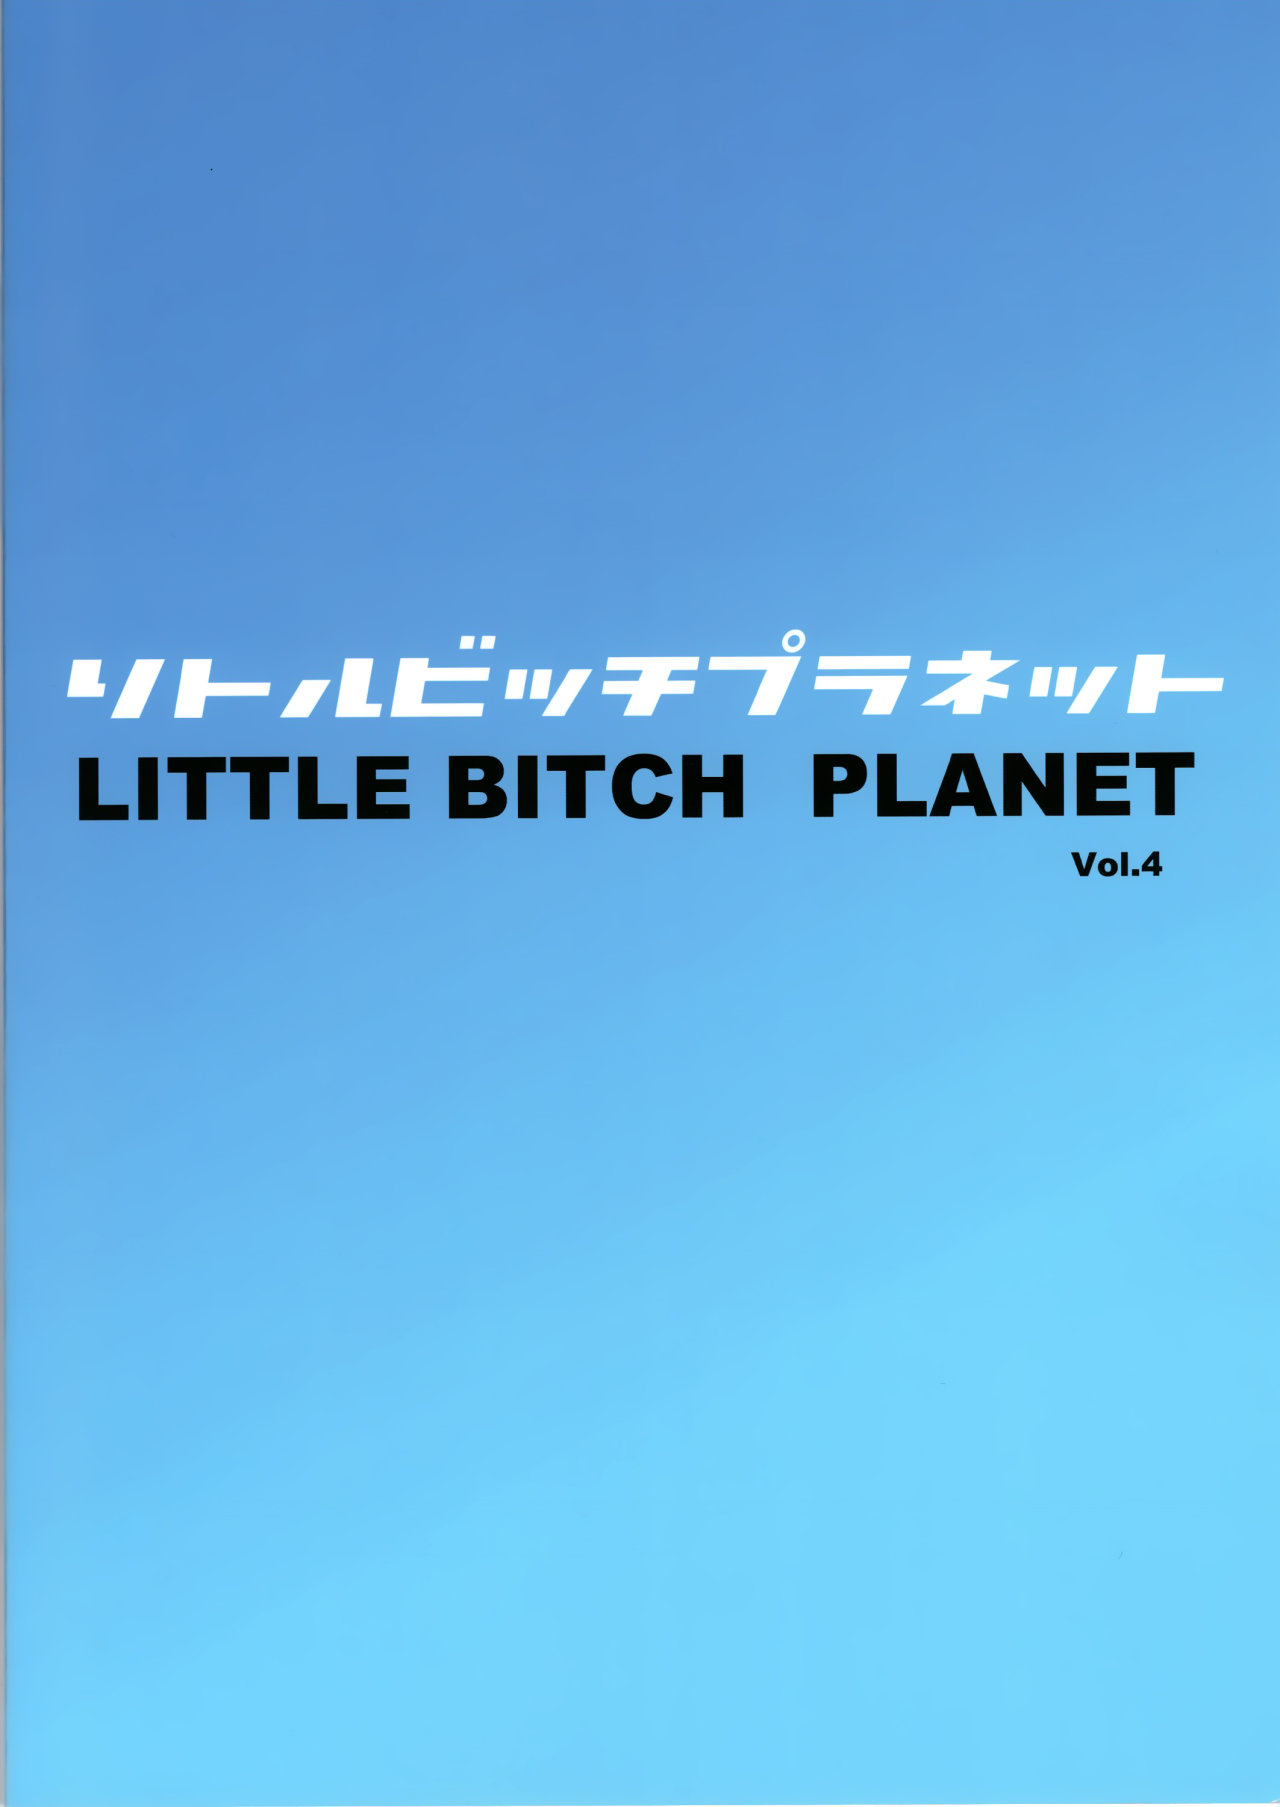 Little Bitch Planet Vol 4 - 26